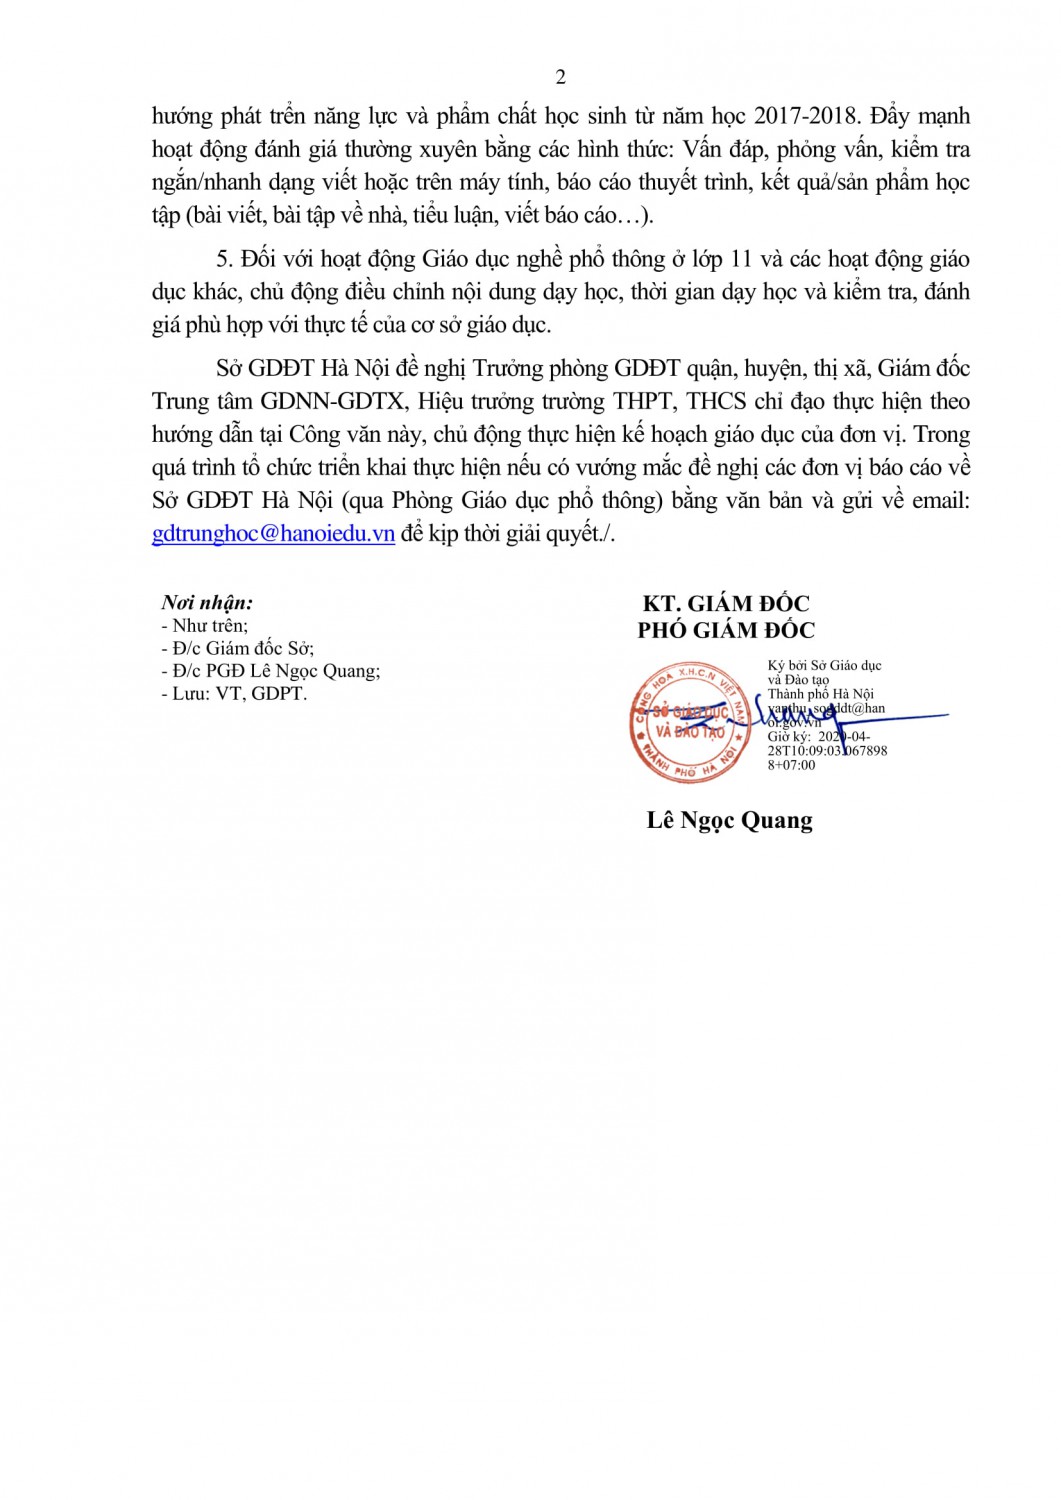 VP Kiem tra danh gia HK2 2019 2020 (28 04 2020 10h09p20) signed 2